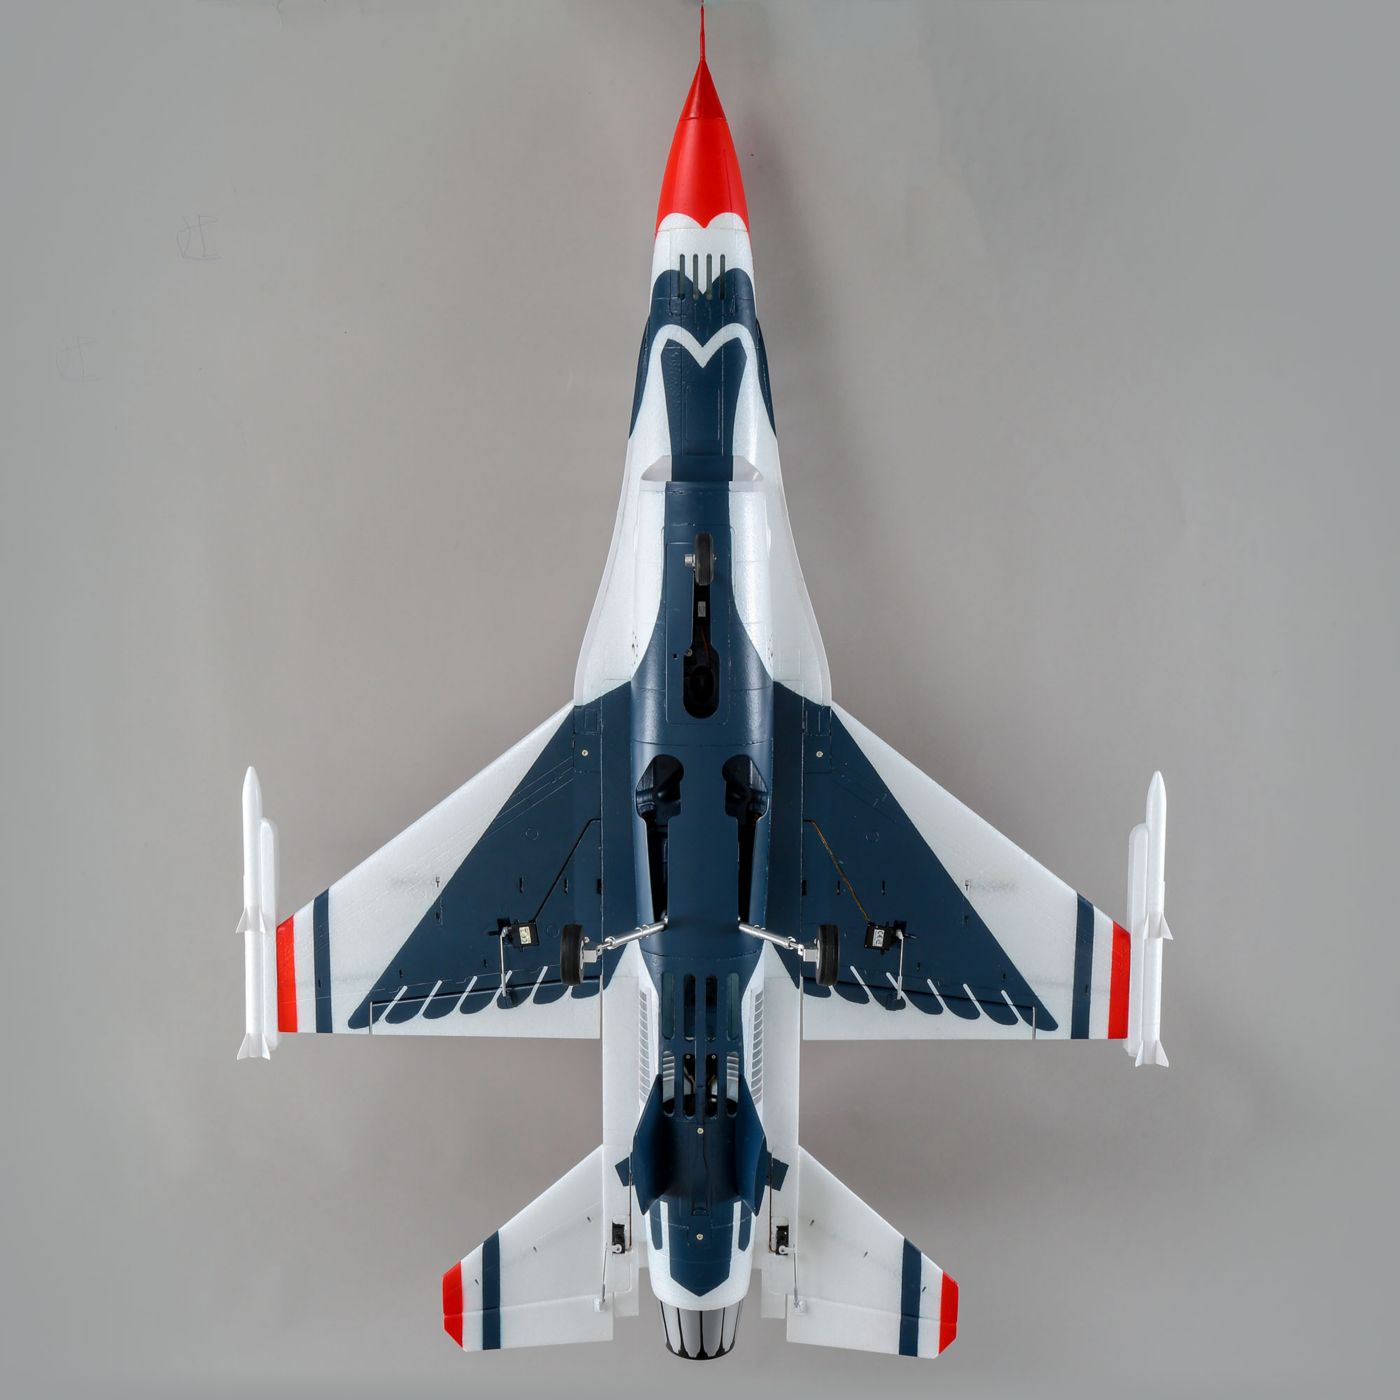 F-16 Thunderbirds 70mm E-flite